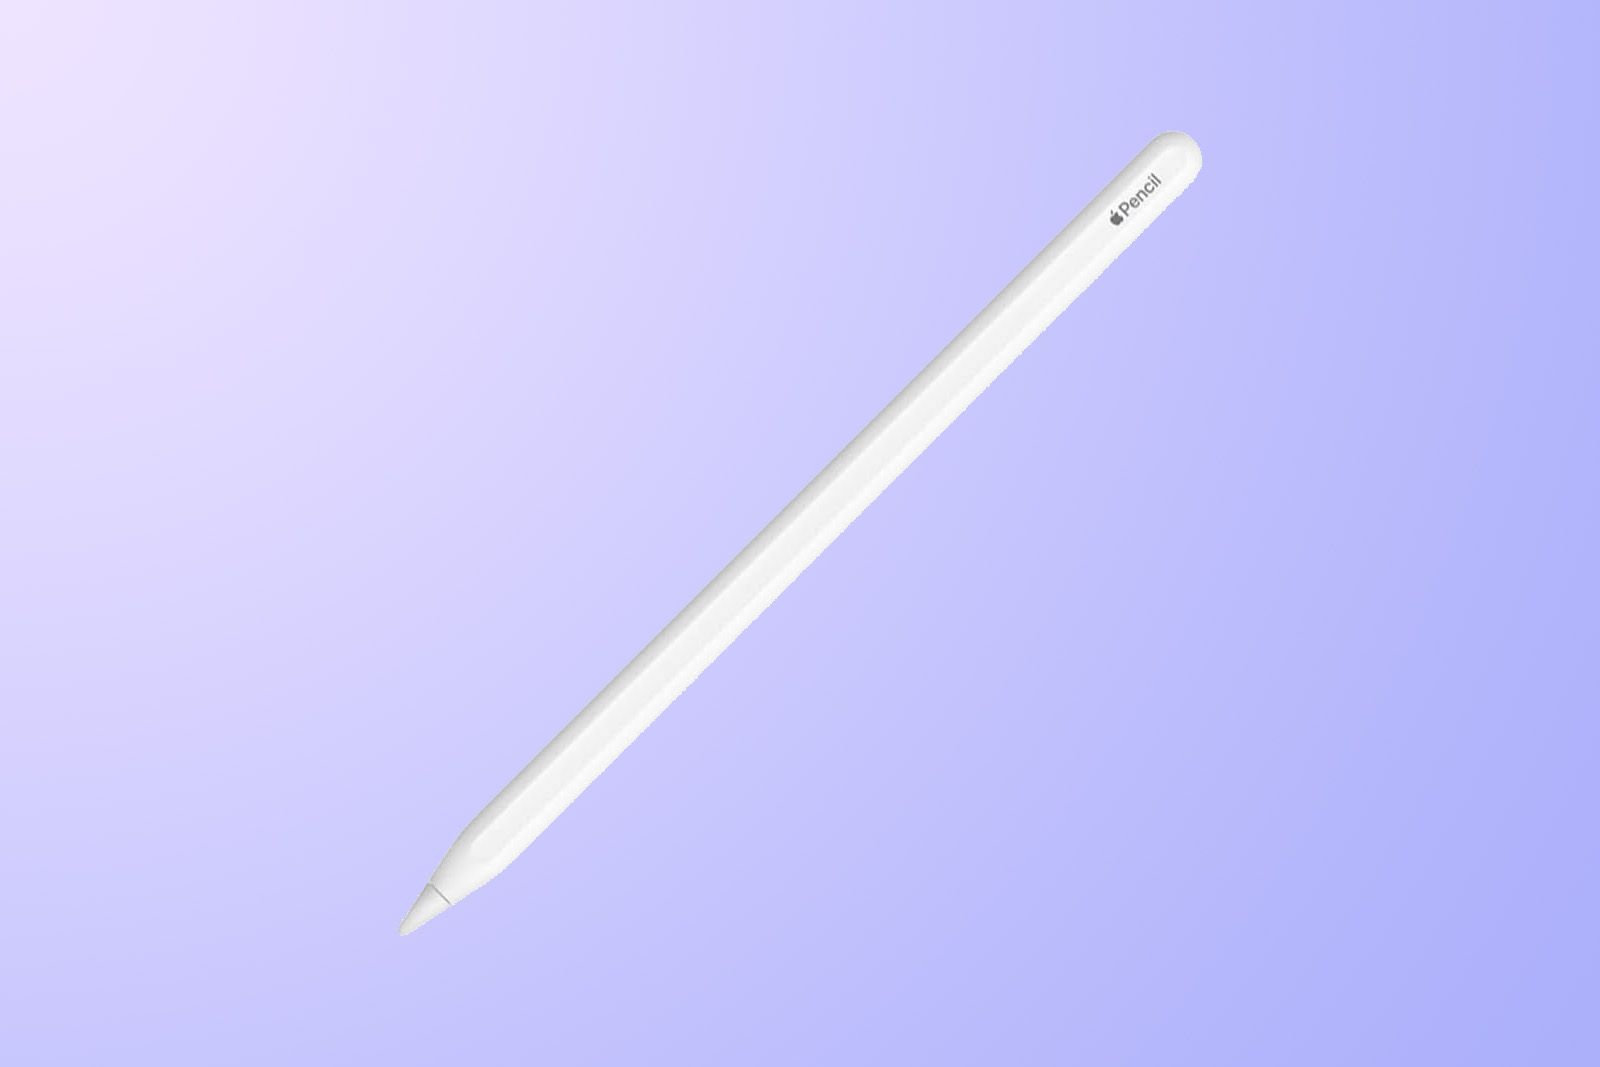 8 astuces pour maîtriser l'Apple Pencil de l'iPad Pro (2021)